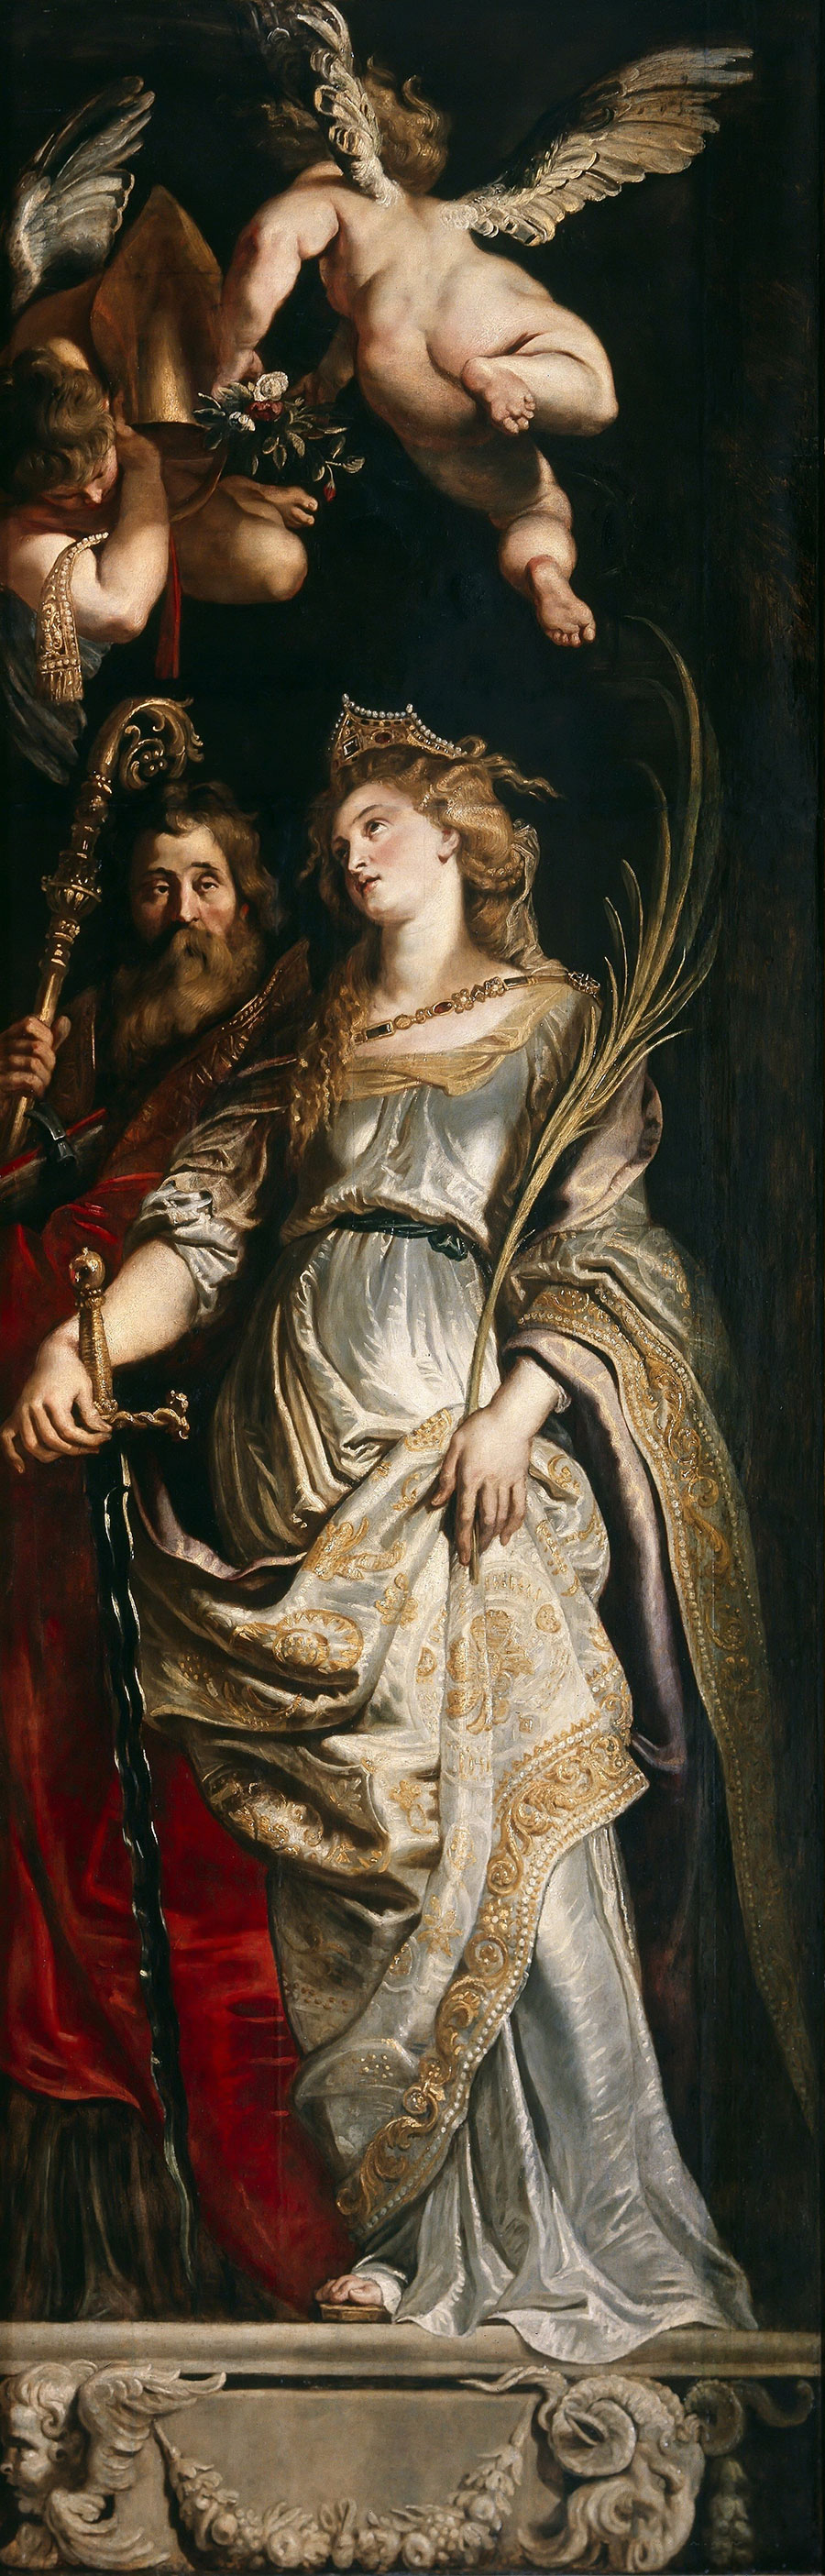 鲁本斯油画作品 鲁本斯和他的妻子